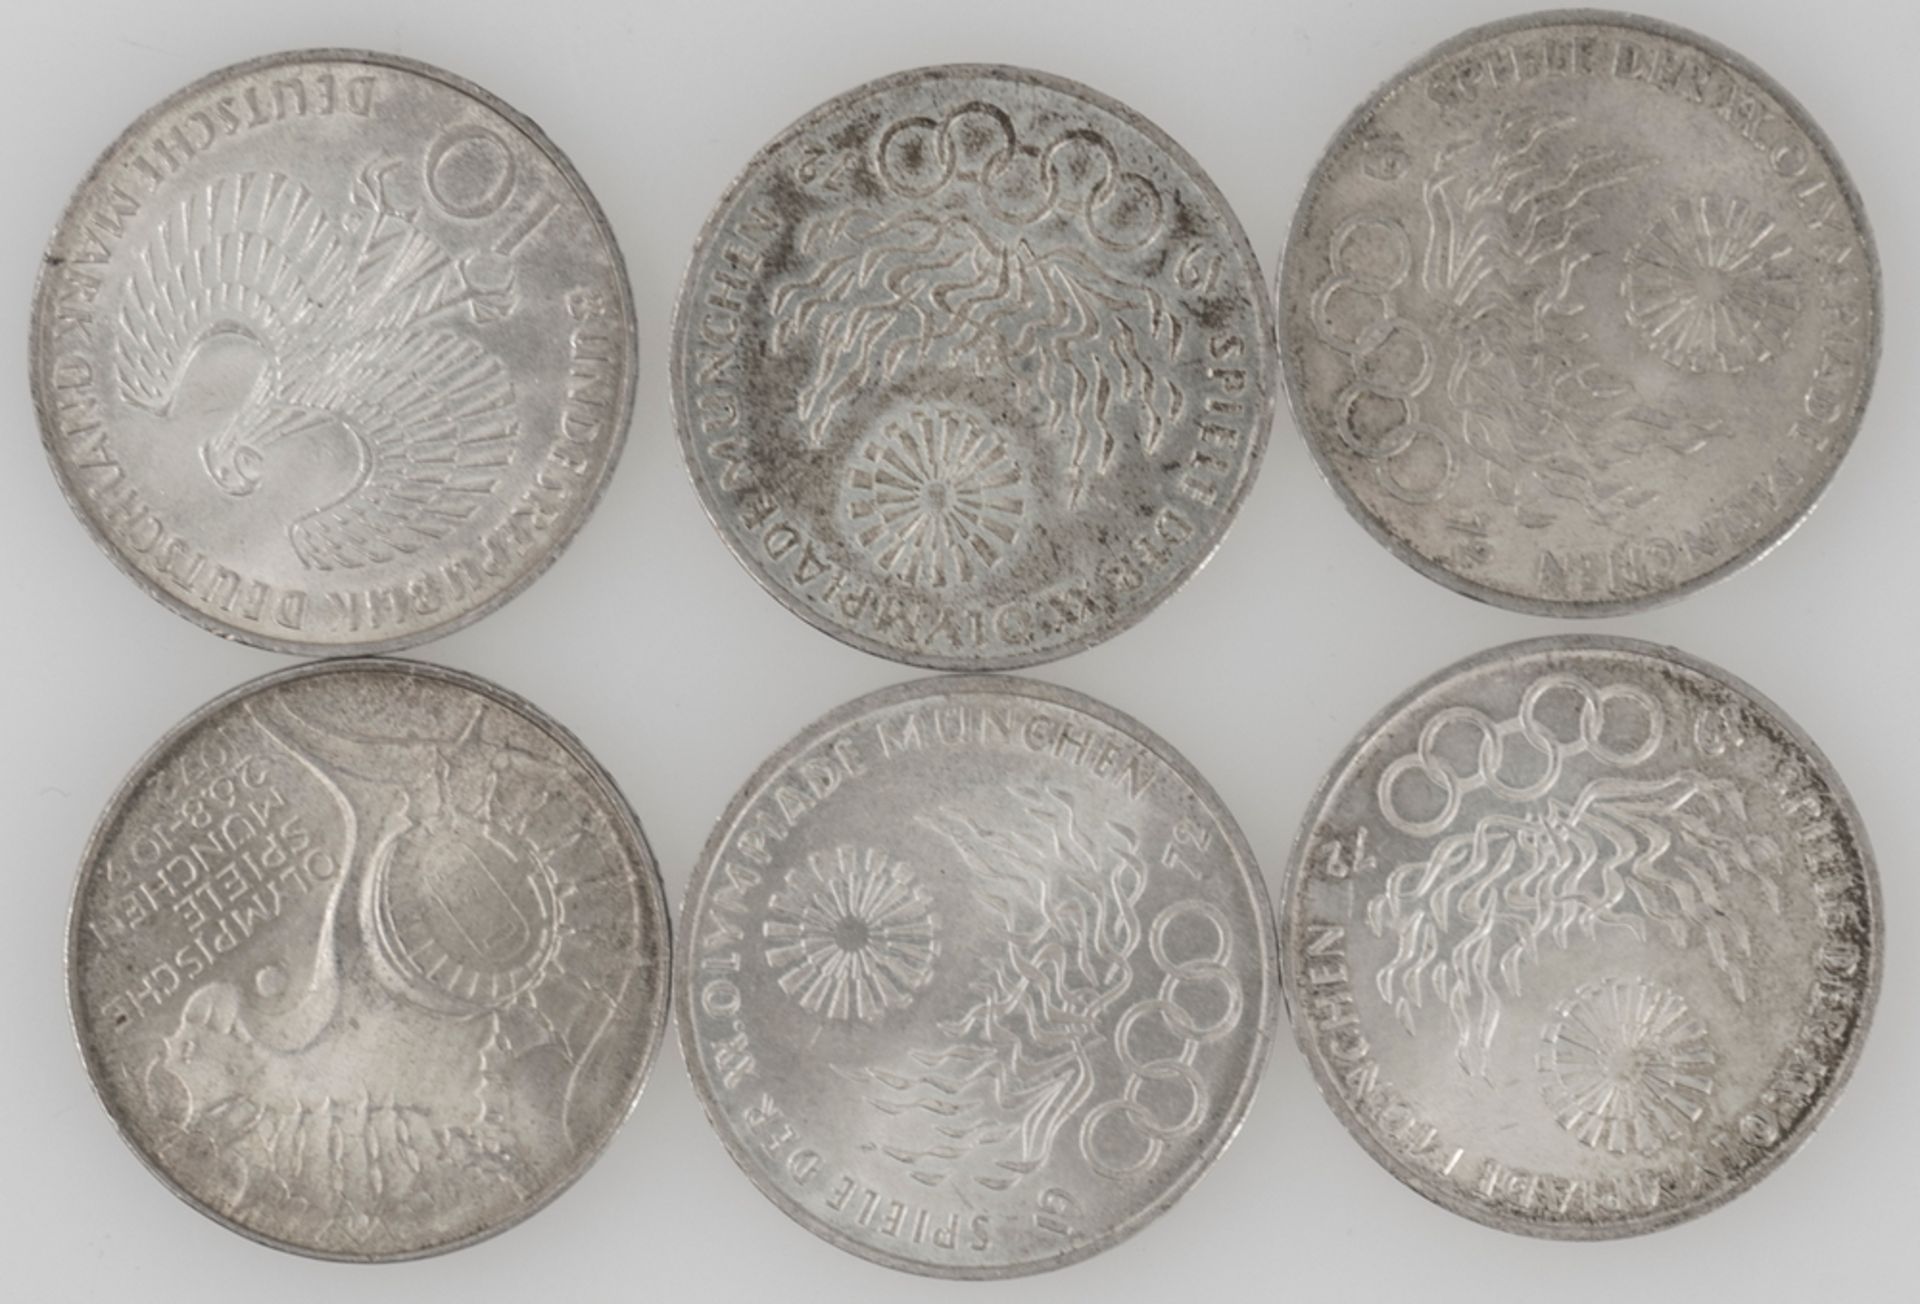 Deutschland 1972, Lot 10 DM - Silbermünzen "Olympische Spiele". Erhaltung: ss. - Bild 2 aus 2